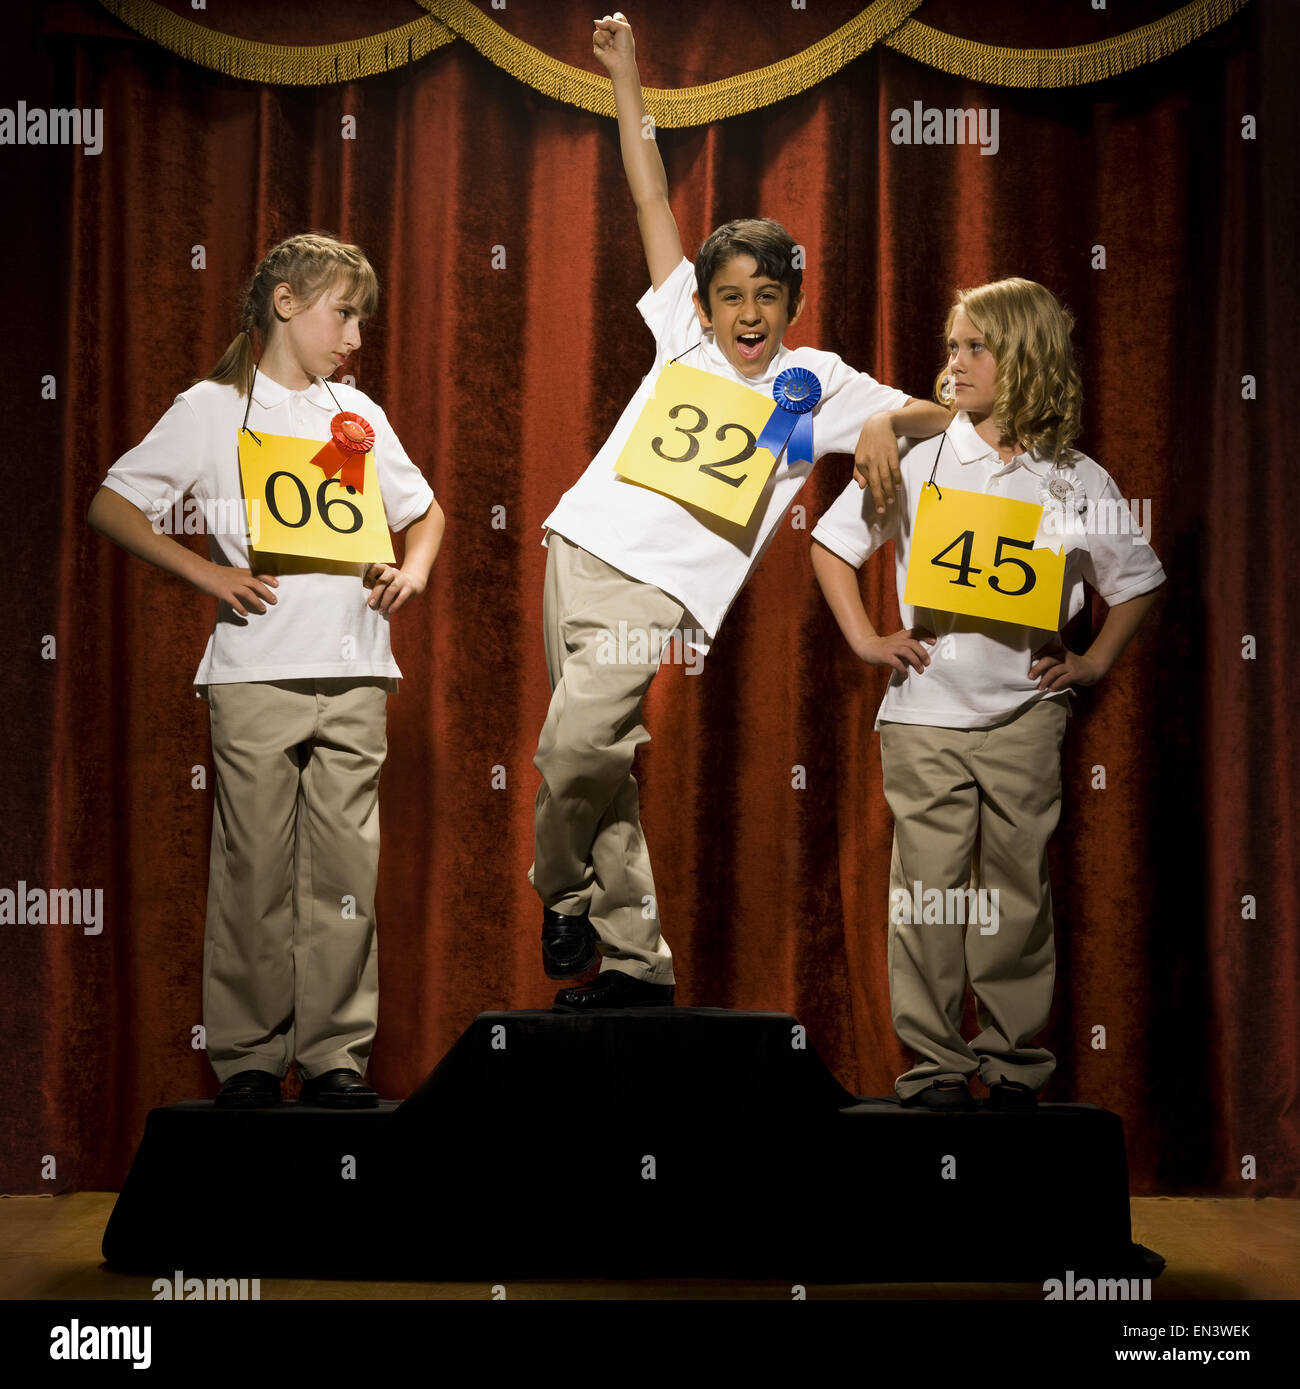 Drei Kinder auf der Bühne am Siegertreppchen mit Bändern lächelnd Stockfoto